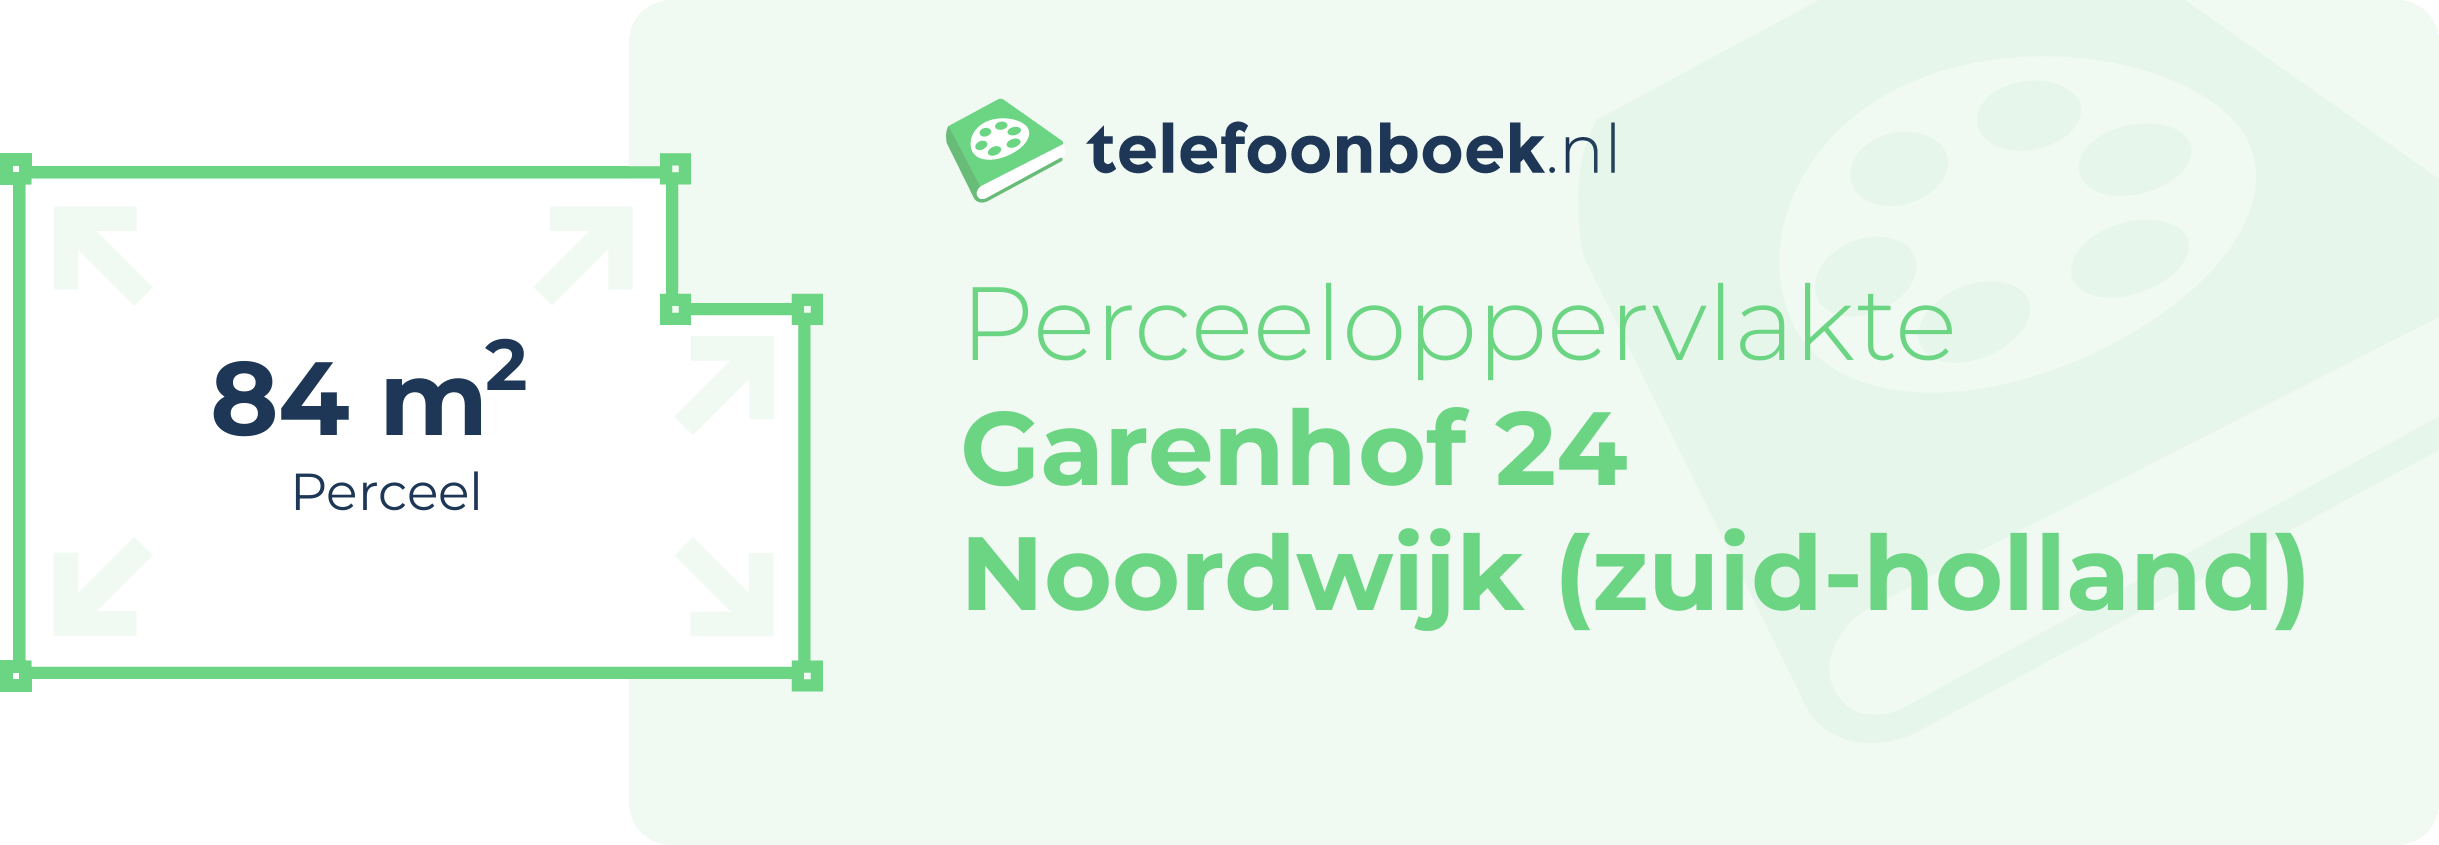 Perceeloppervlakte Garenhof 24 Noordwijk (Zuid-Holland)